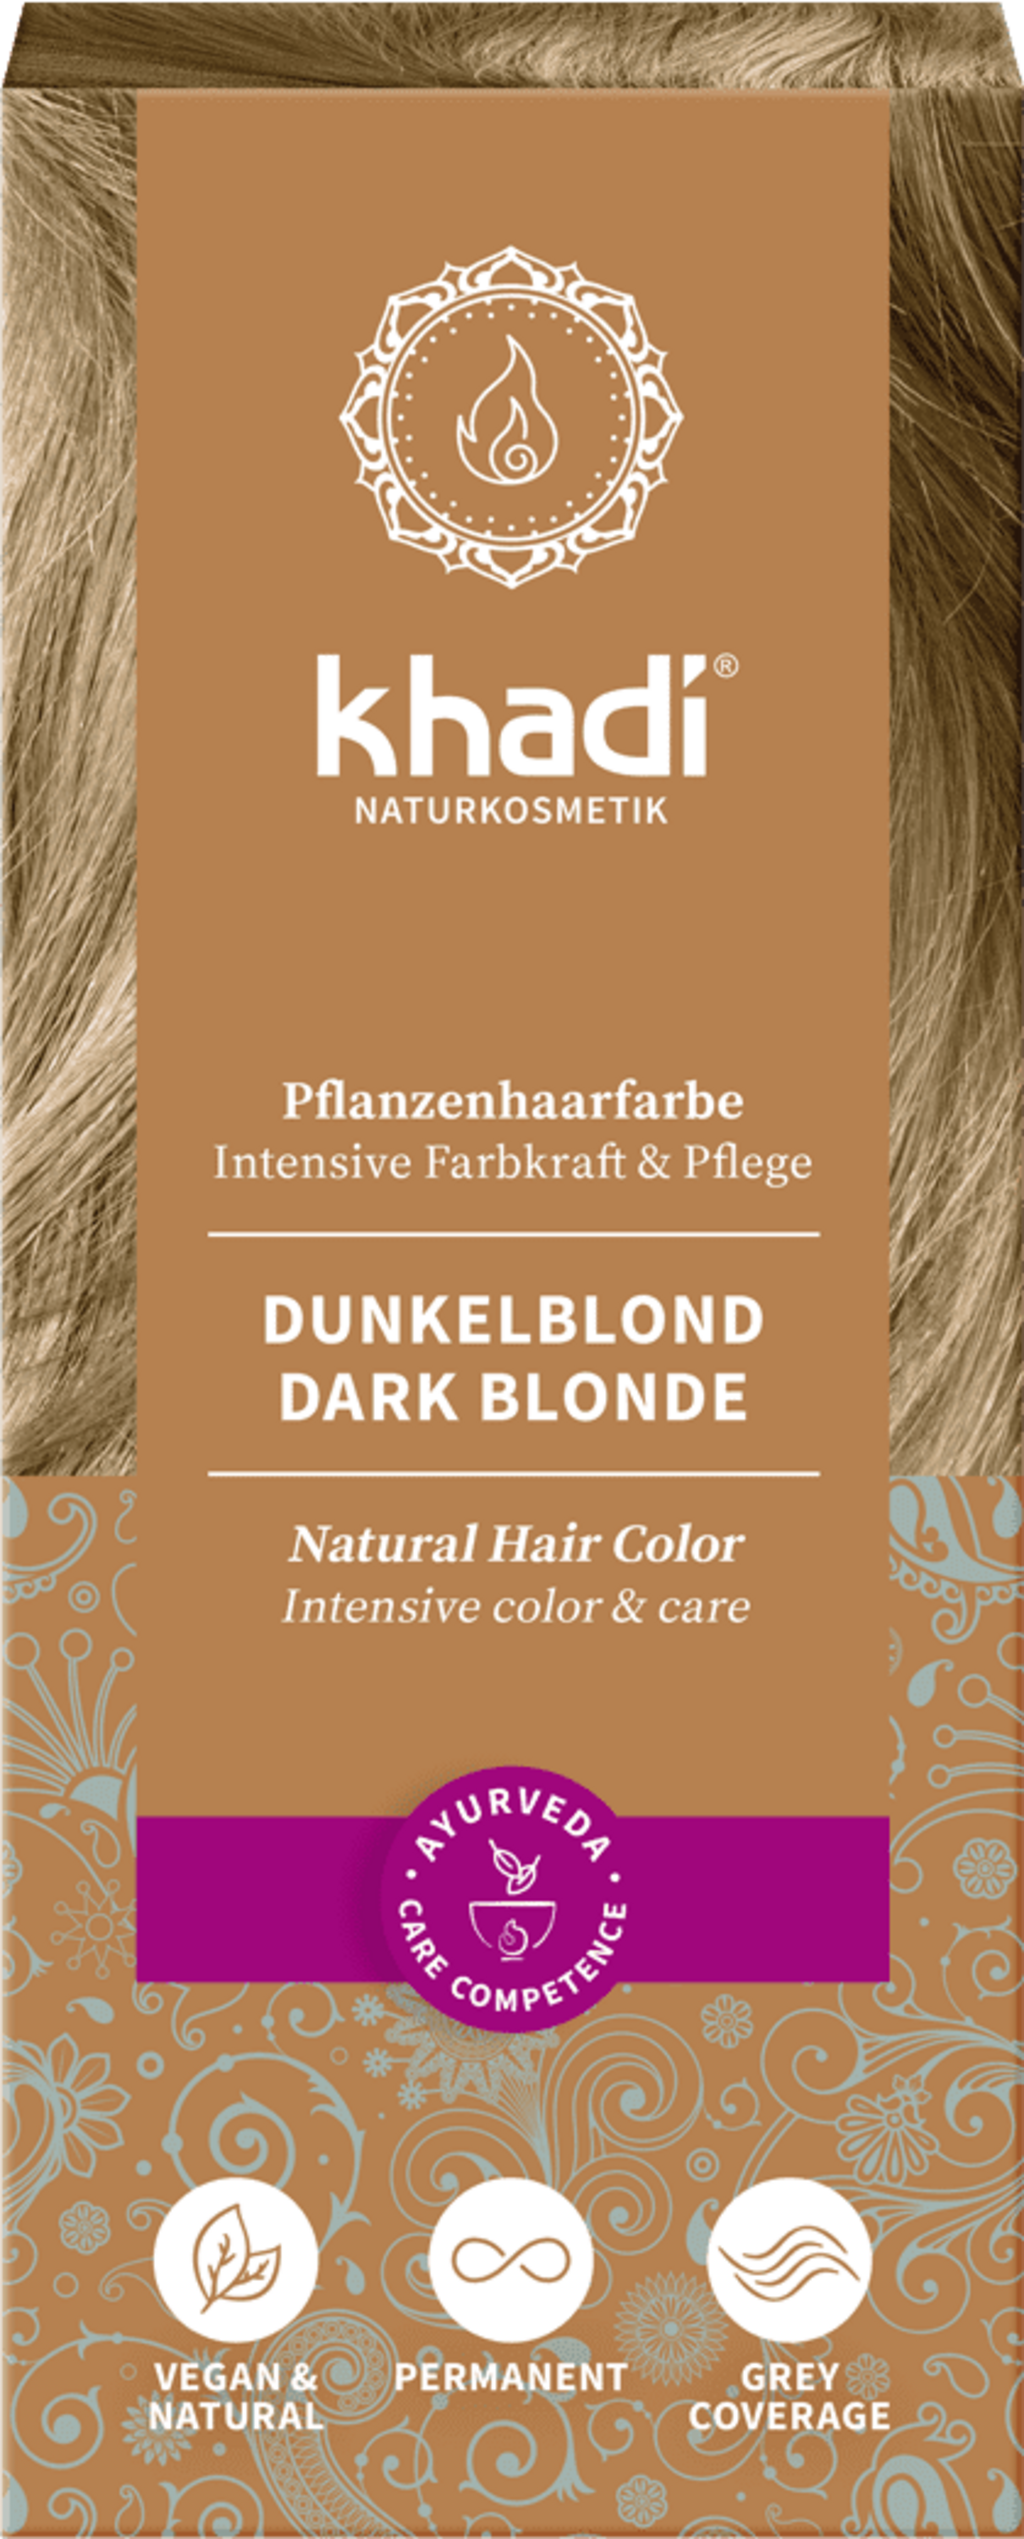 Khadi® Herbal Hair Colour Dark Blonde - 100 g